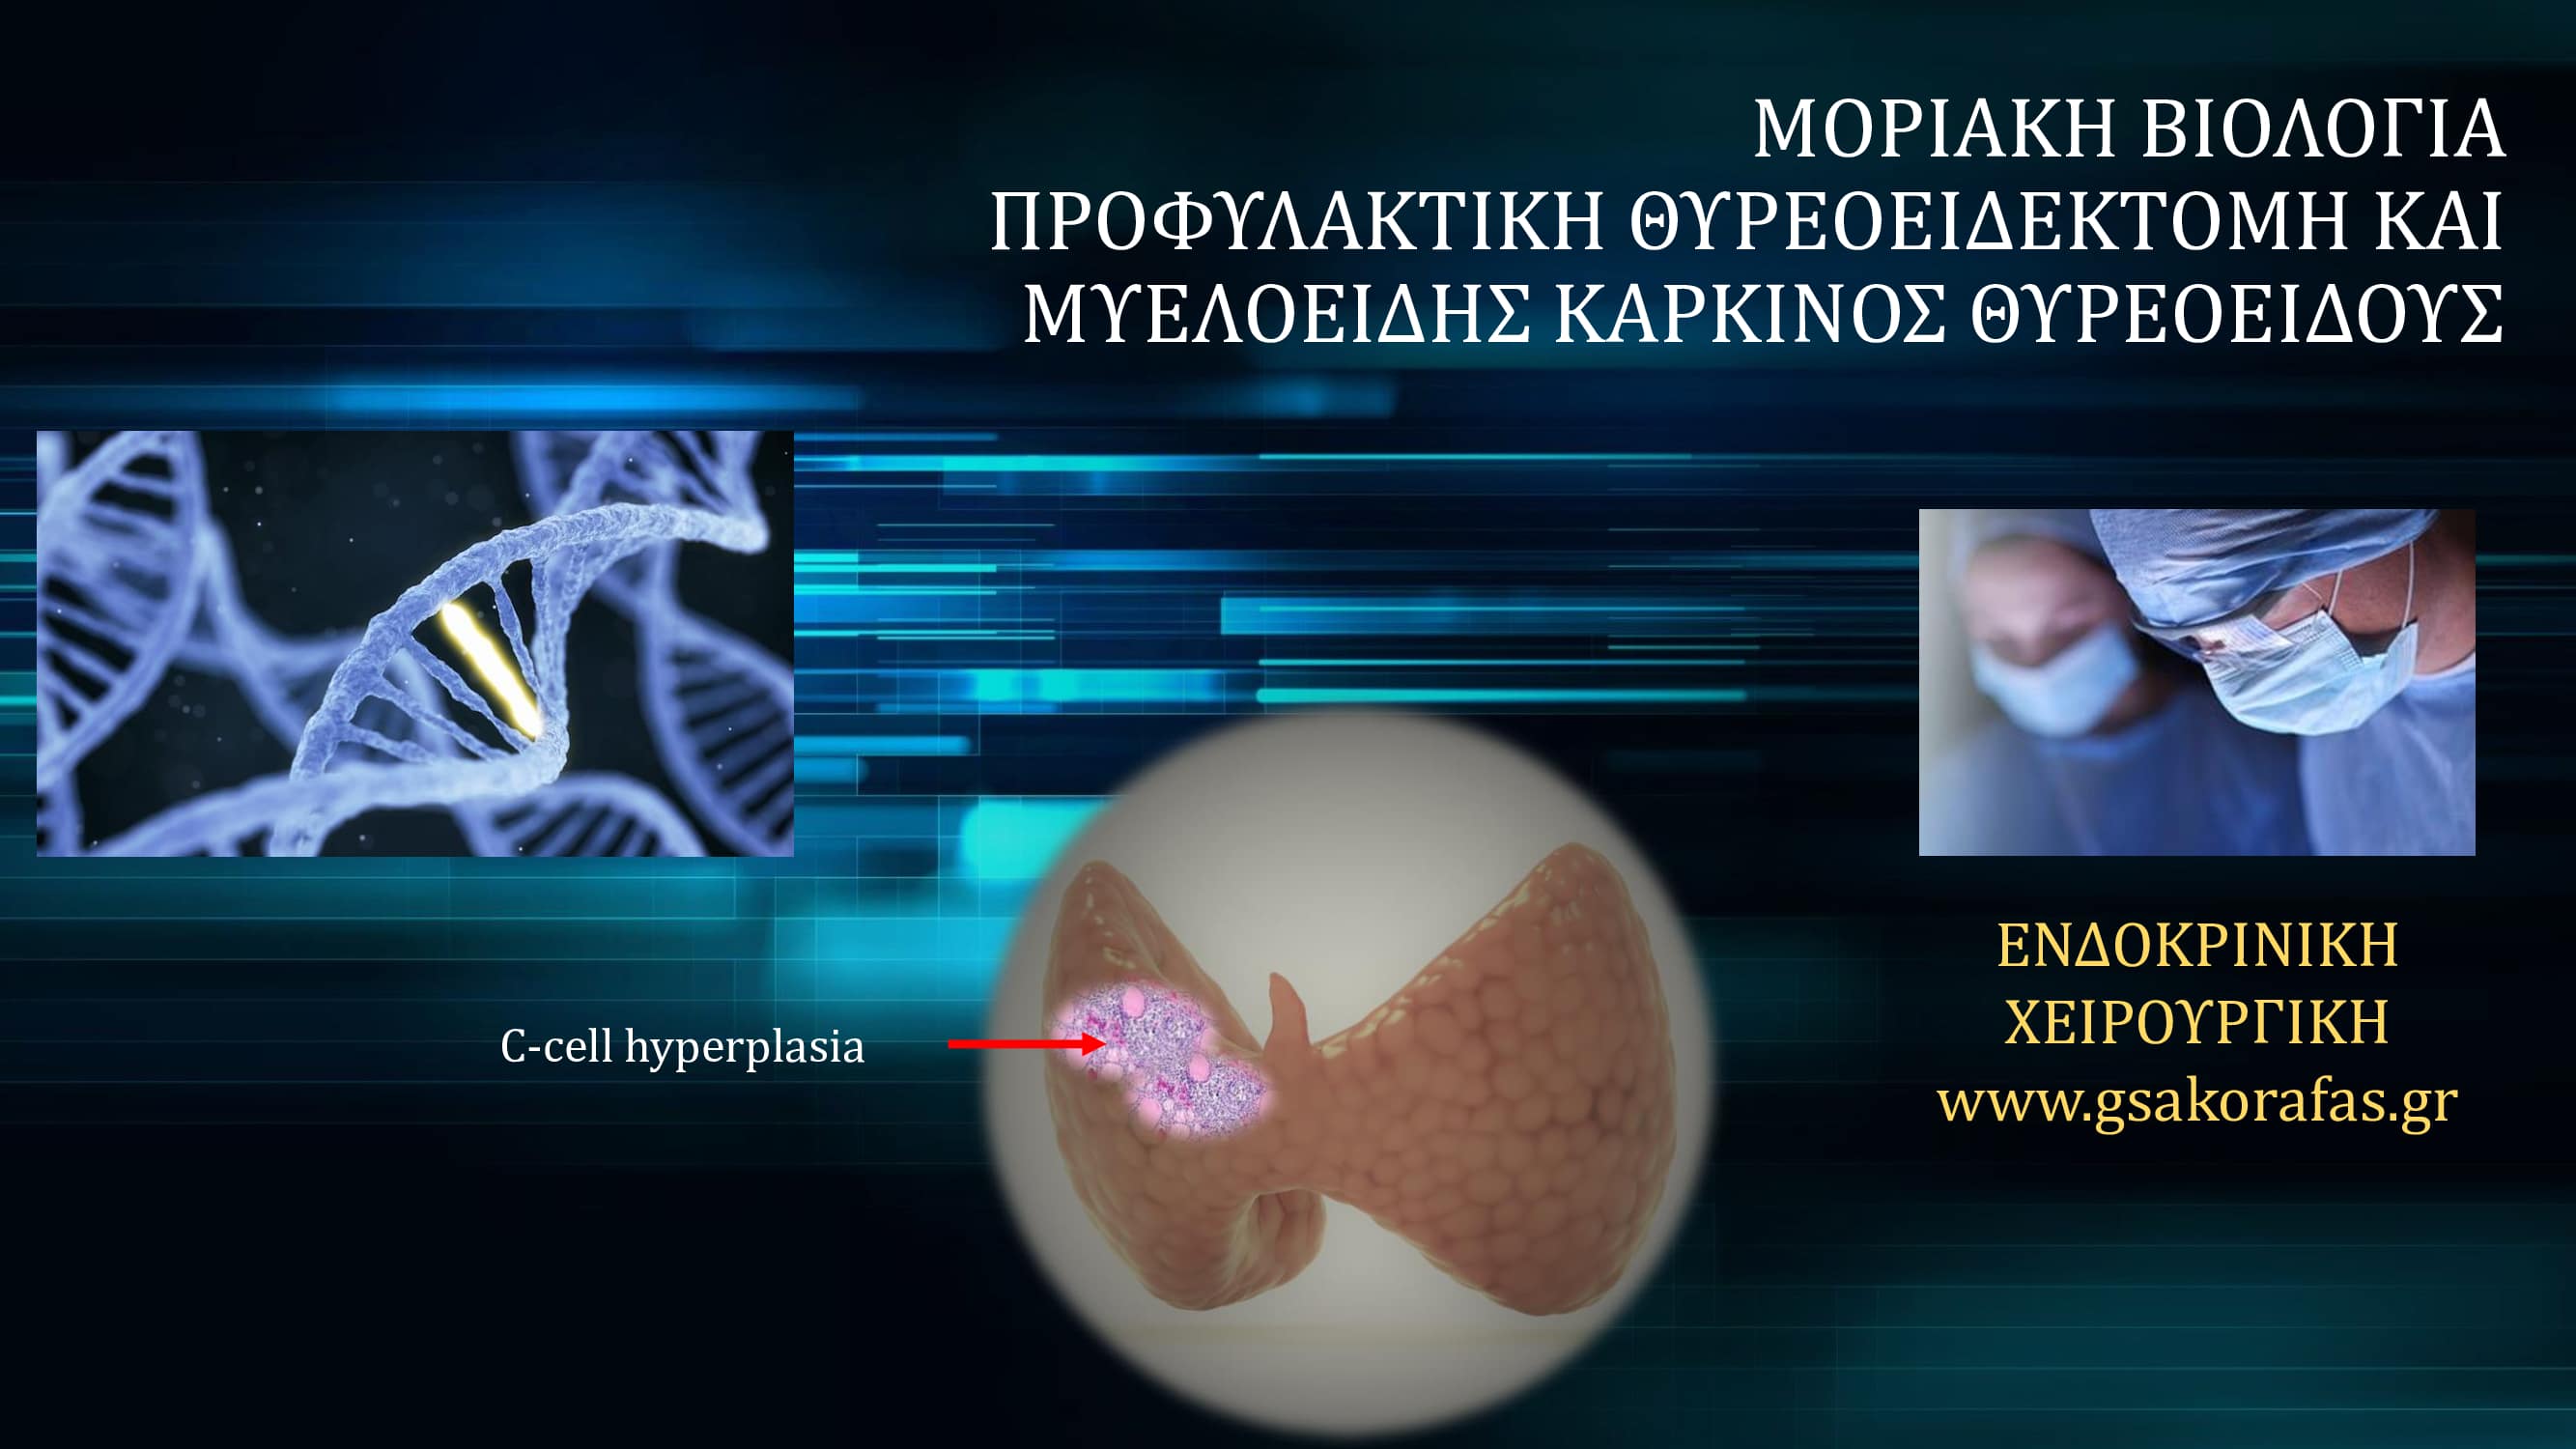 Μυελοειδής καρκίνος θυρεοειδούς: Μοριακή βιολογία και Προφυλακτική Θυρεοειδεκτομή